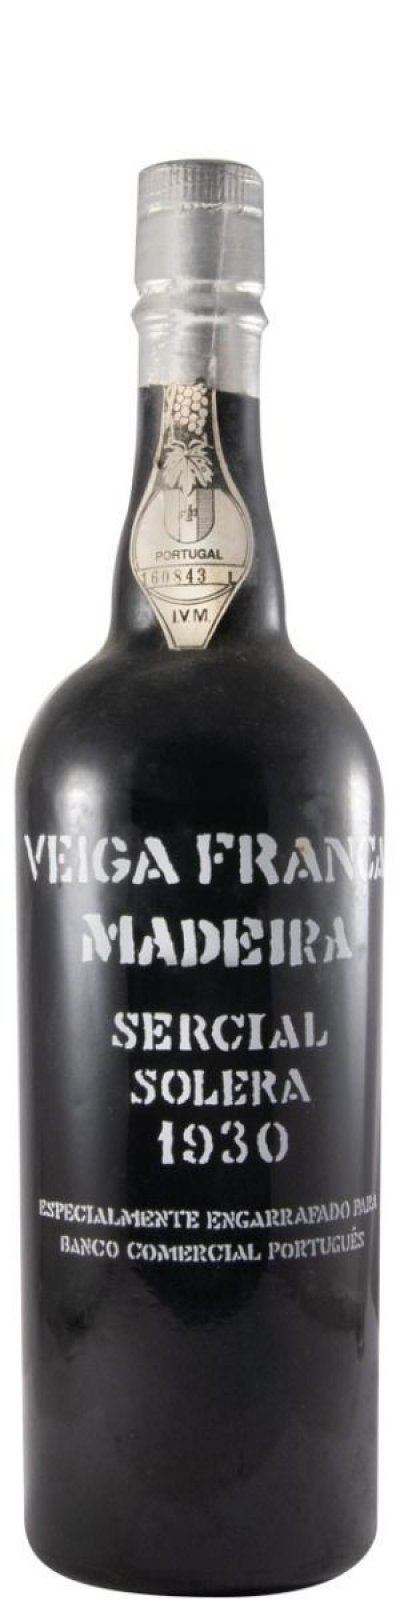 Madeira Sercial Solera 1930, Veiga França